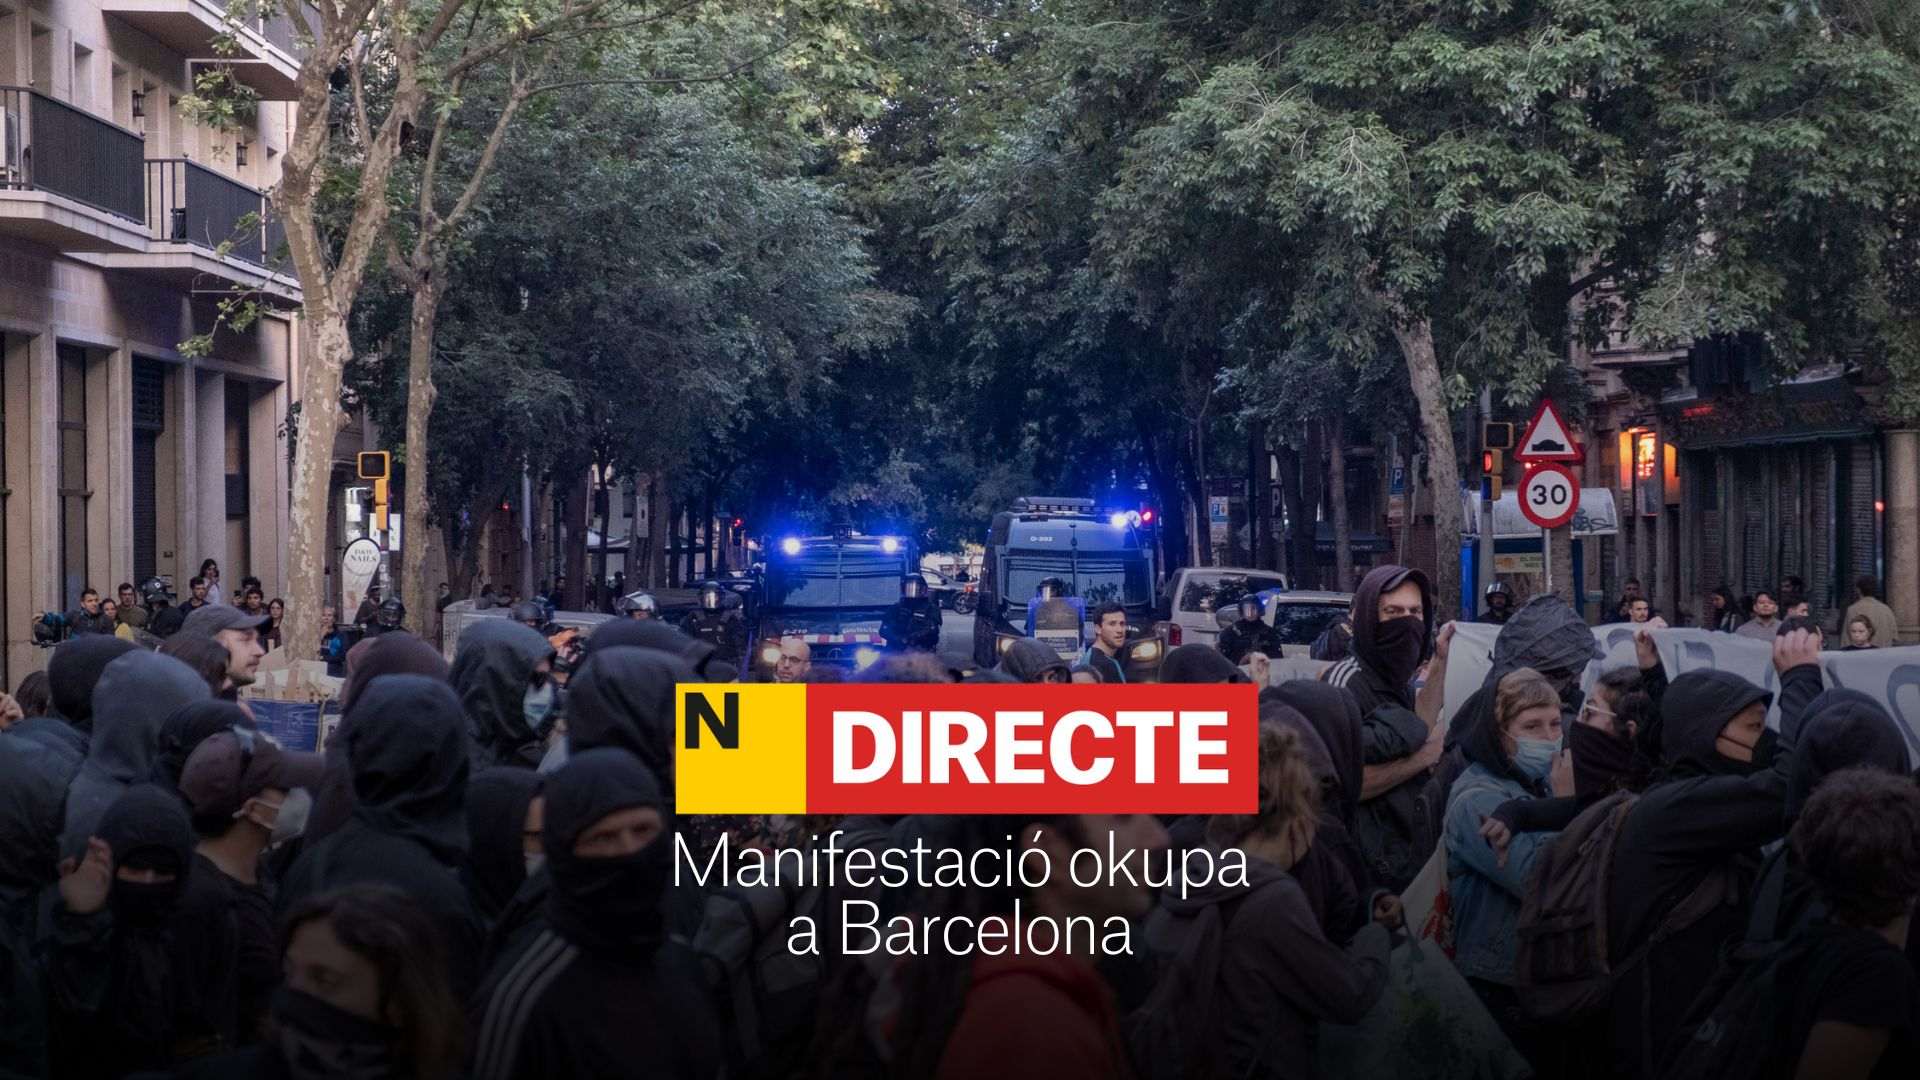 Manifestación okupa en Barcelona hoy, DIRECTO | Protestas por el desalojo de la Bonanova